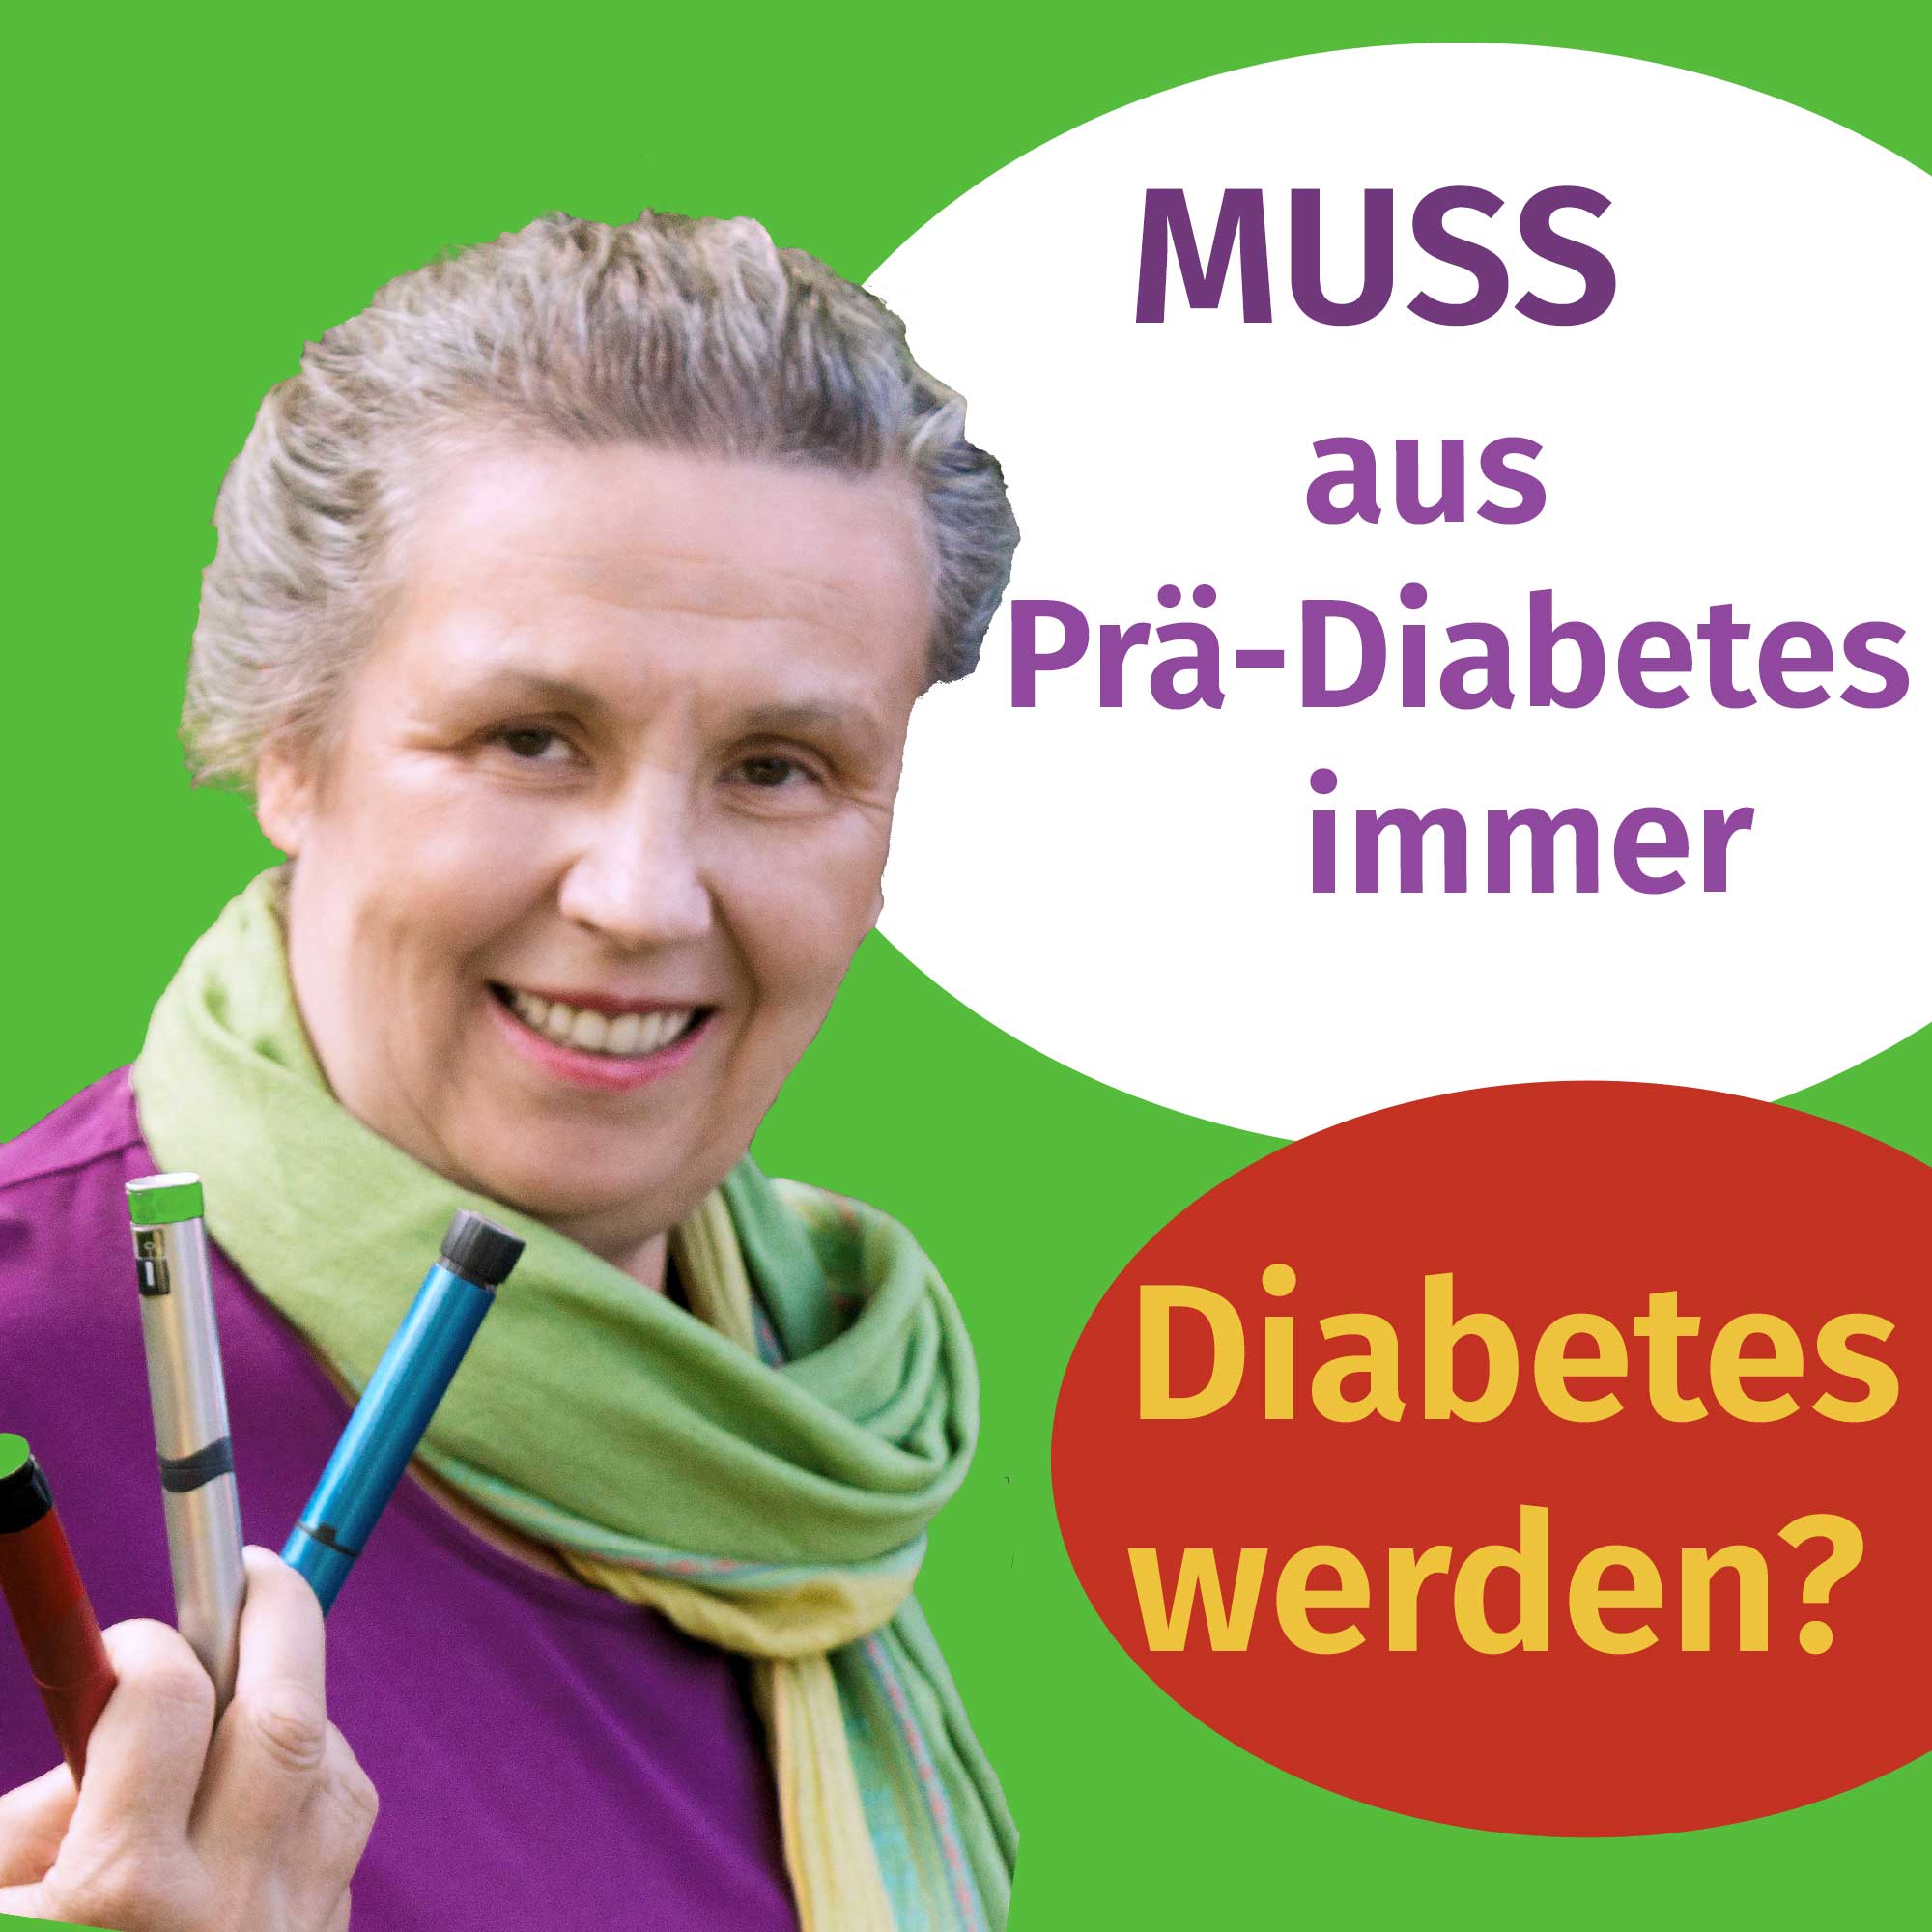 65 - MUSS aus Prä-Diabetes "echter" Diabetes werden?